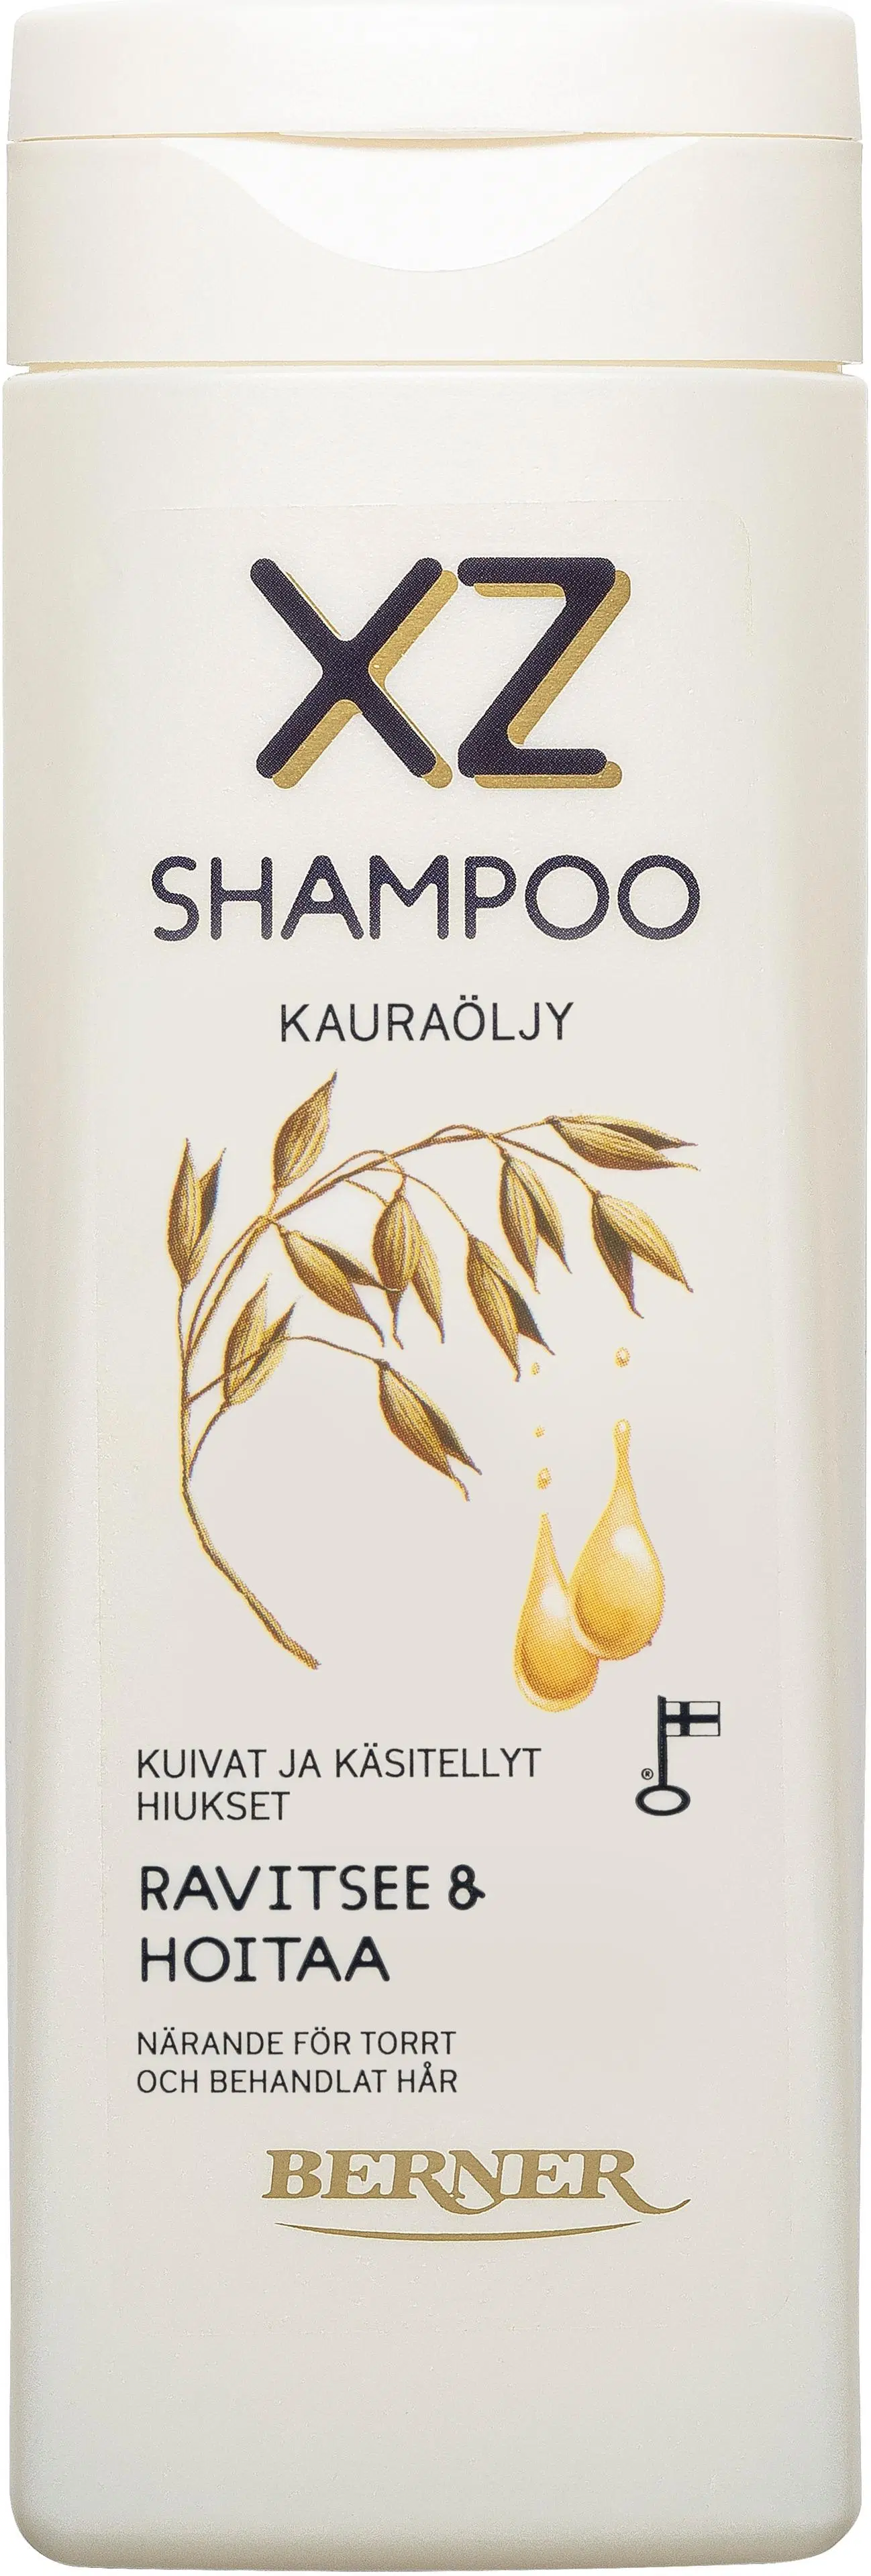 XZ 250ml Kauraöljy shampoo